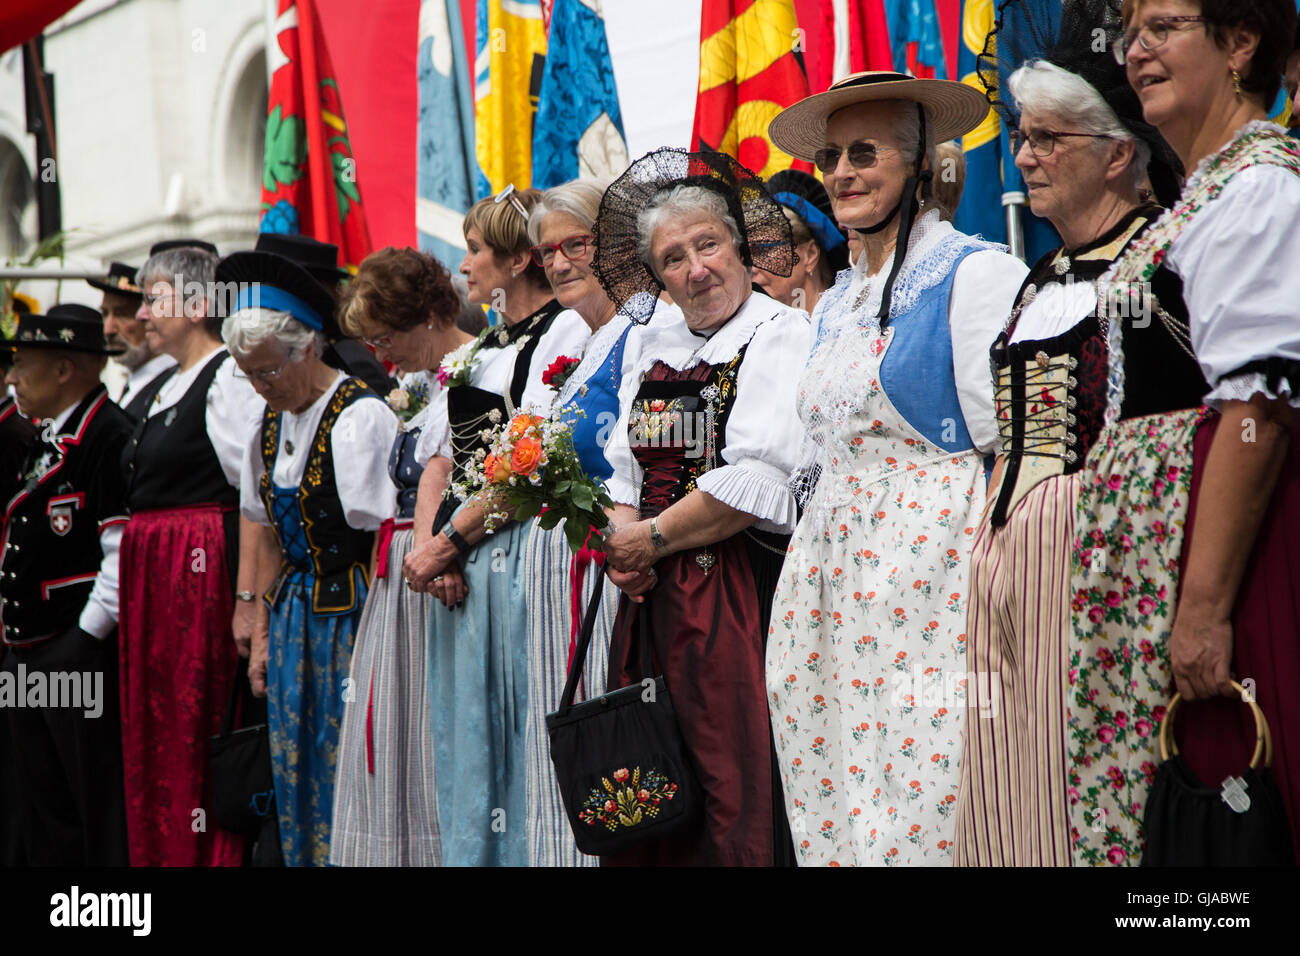 01/08/2016. Zürich, Schweiz. Frauen tragen traditionelle Kleidung bei einer  Zeremonie in Zürich zur Feier des Schweizerischen Nationalfeiertags  Stockfotografie - Alamy